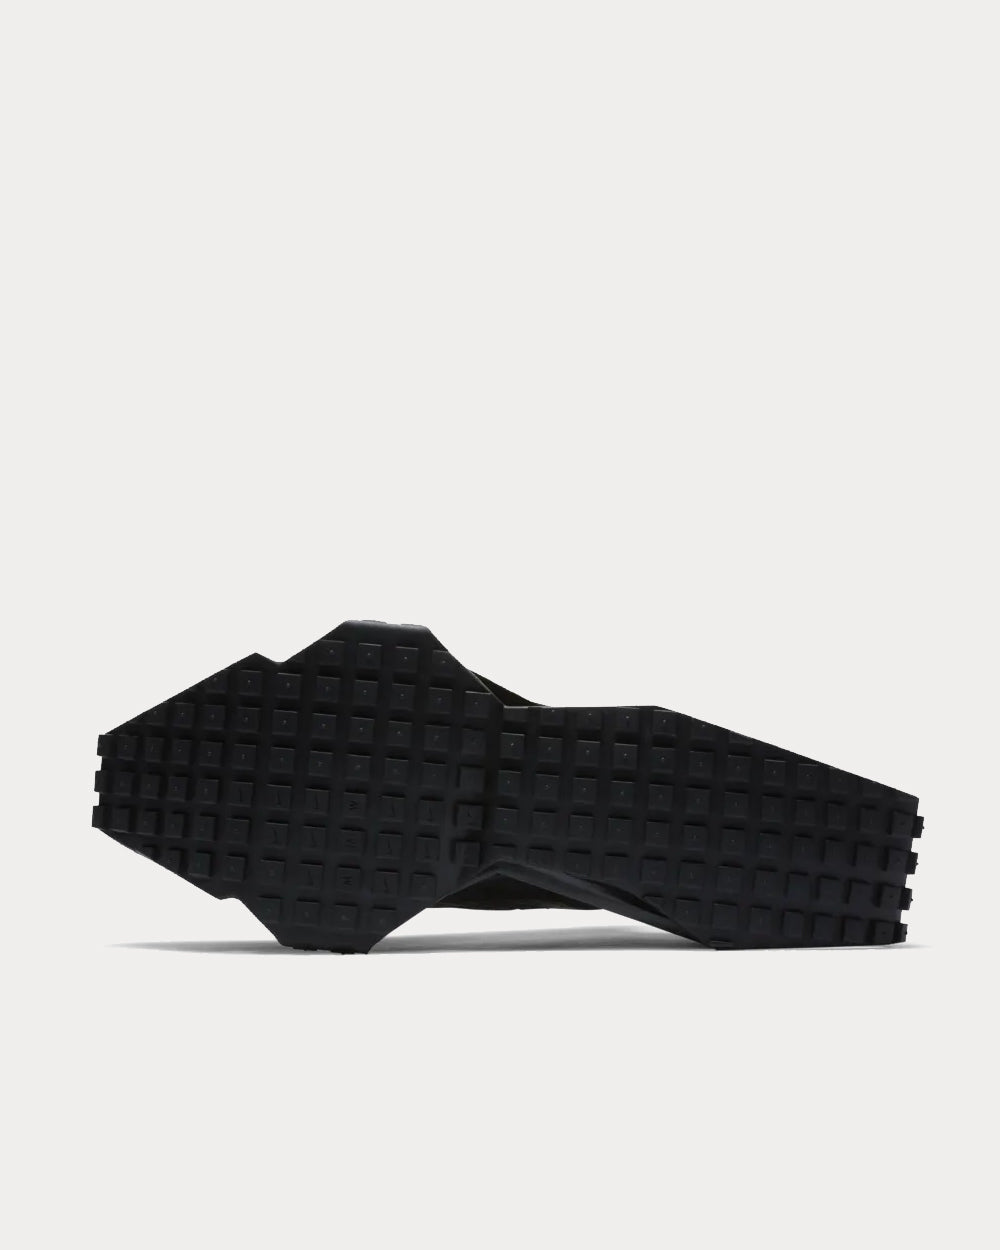 Nike x MMW - Zoom 004 Black Low Top Sneakers